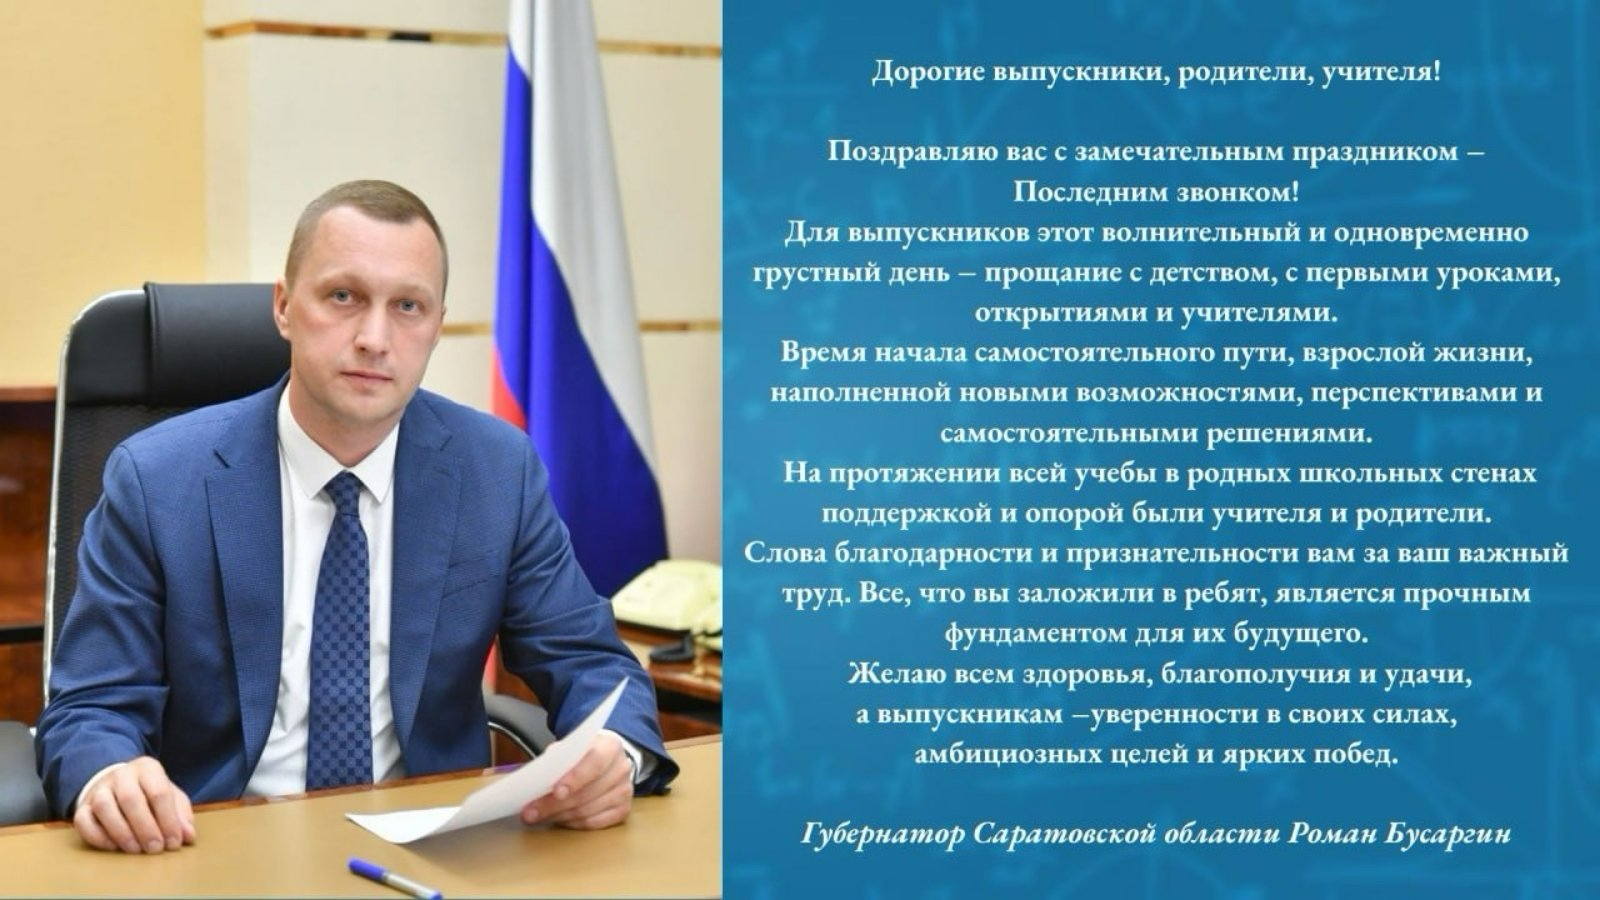 Поздравление губернатора Саратовской области.